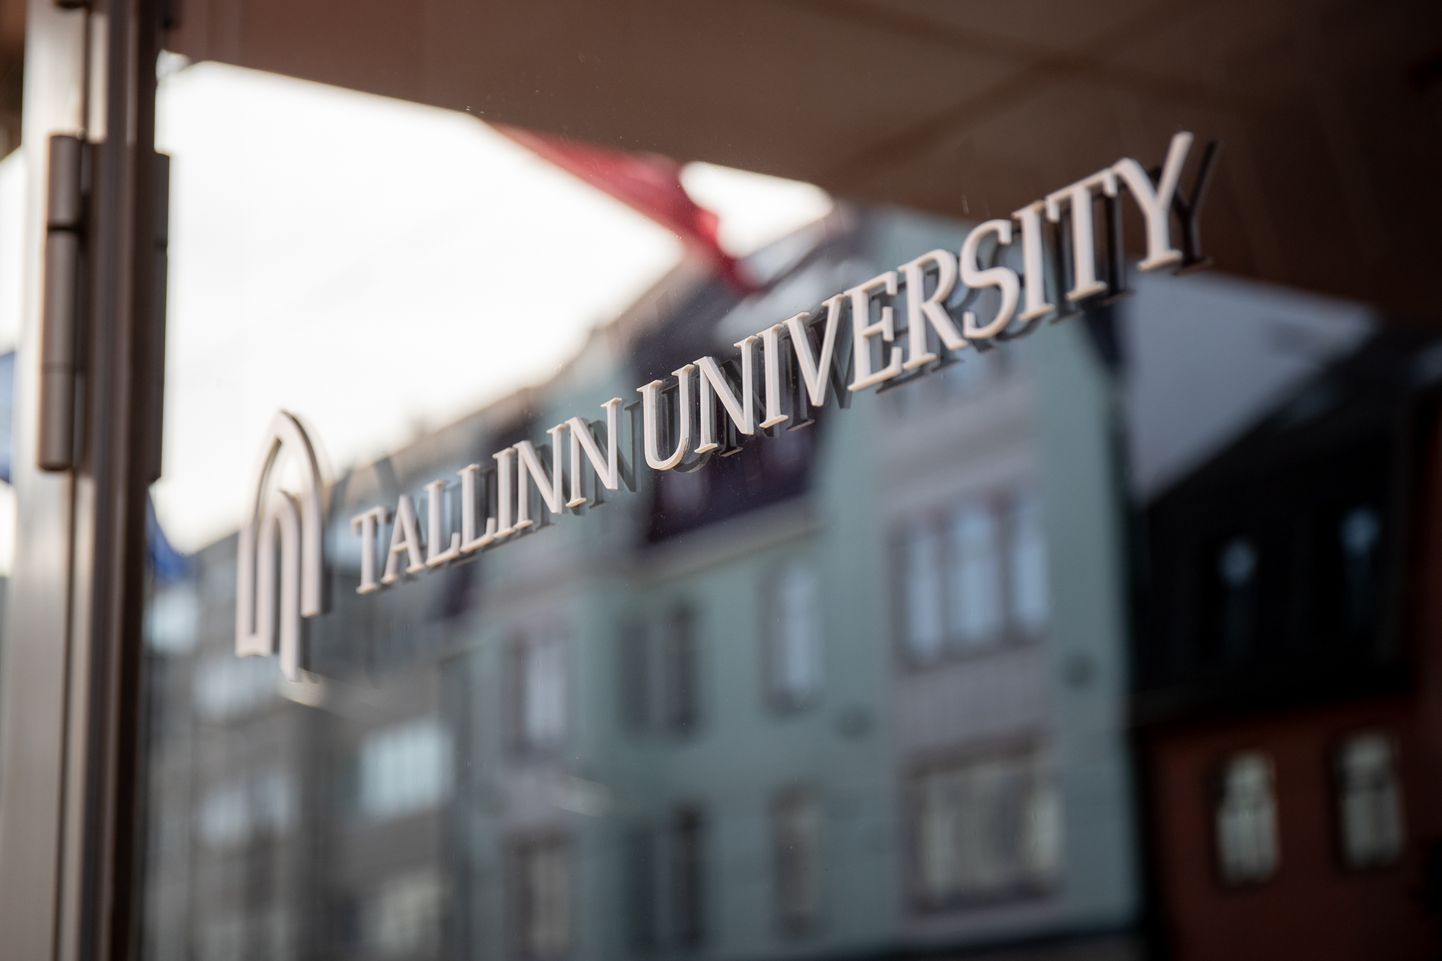 Tallinna Ülikoolis.